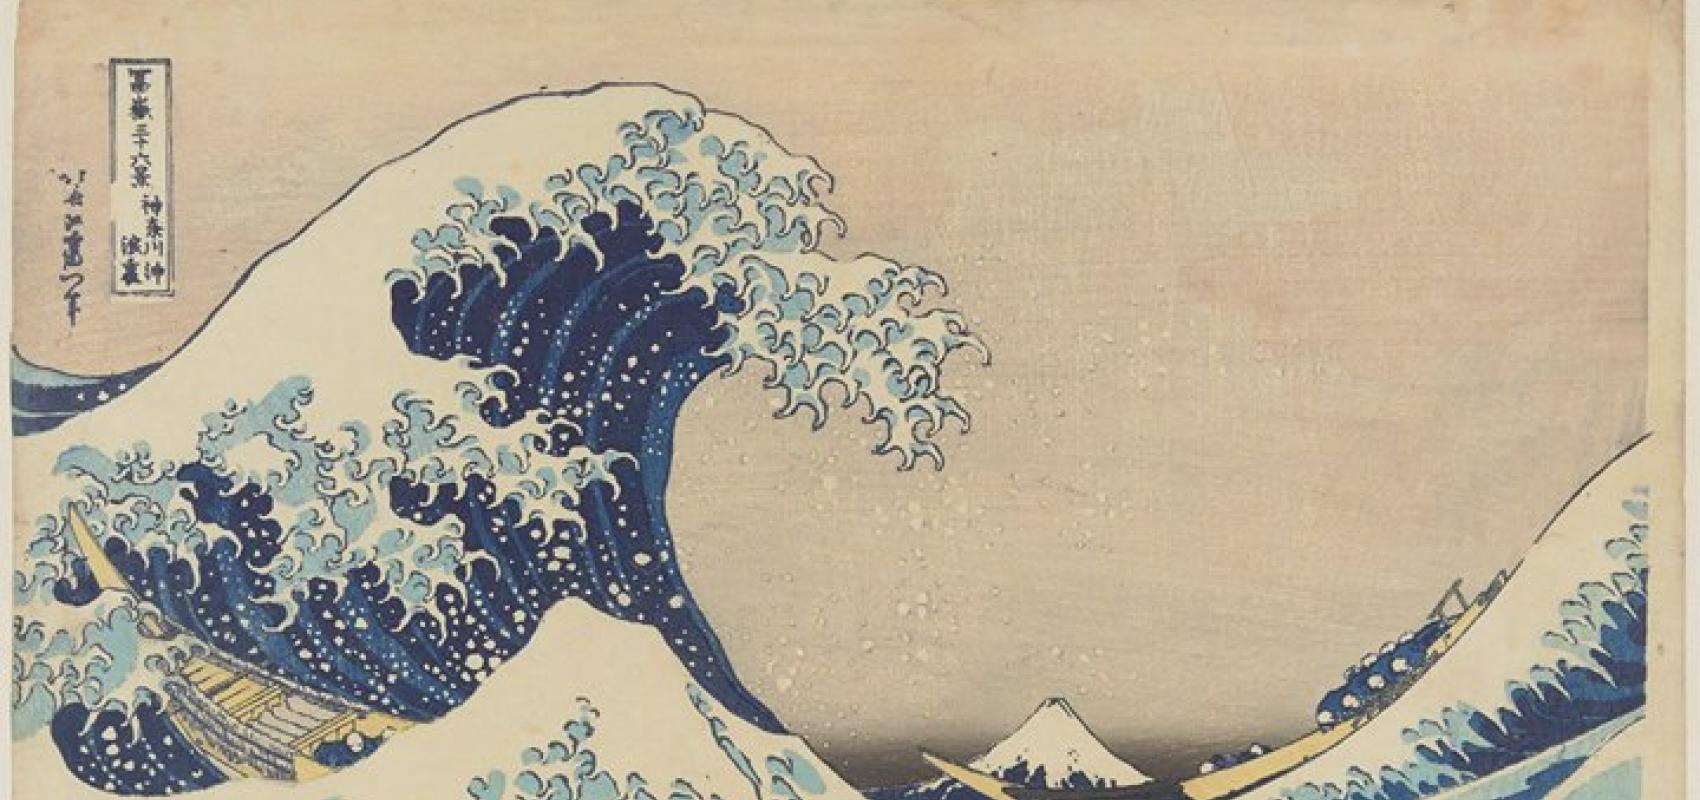 Grand vague Hokusai -  - Hokusai